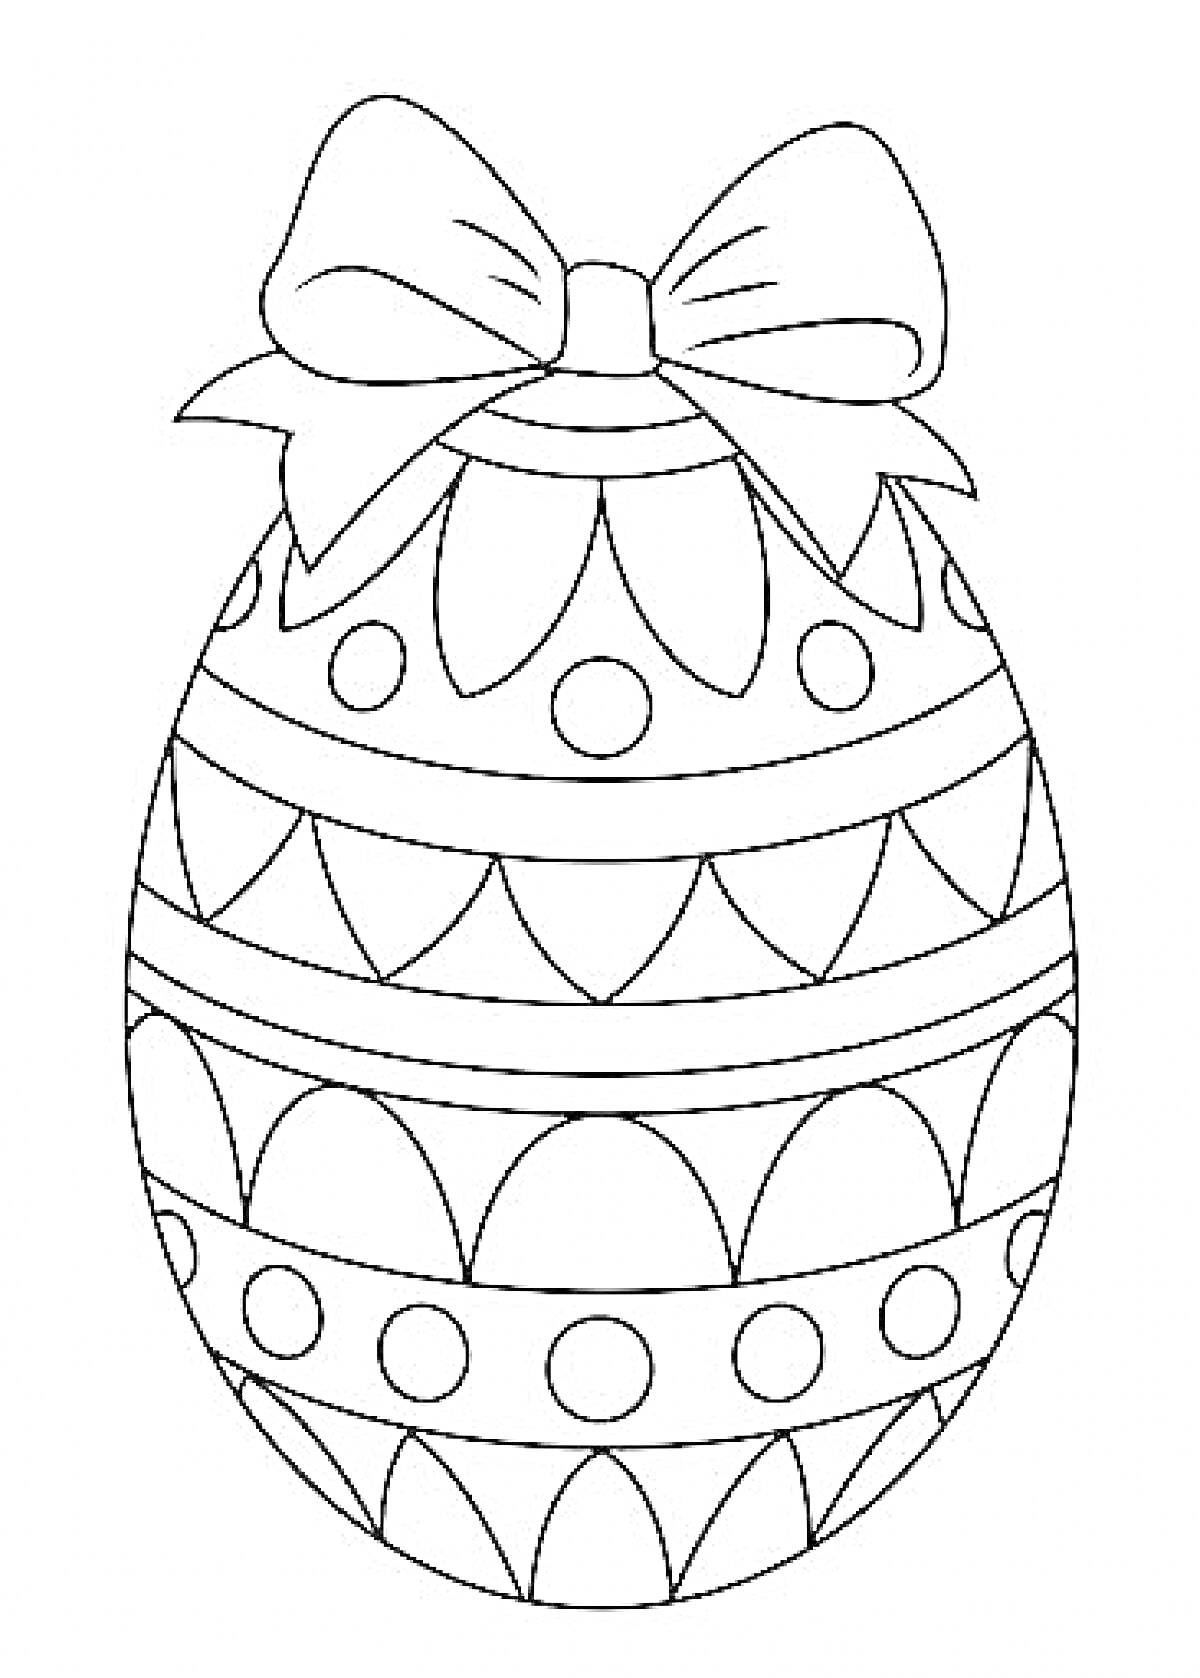 Раскраска Пасхальное яйцо с бантом и узорами (волны, точки)